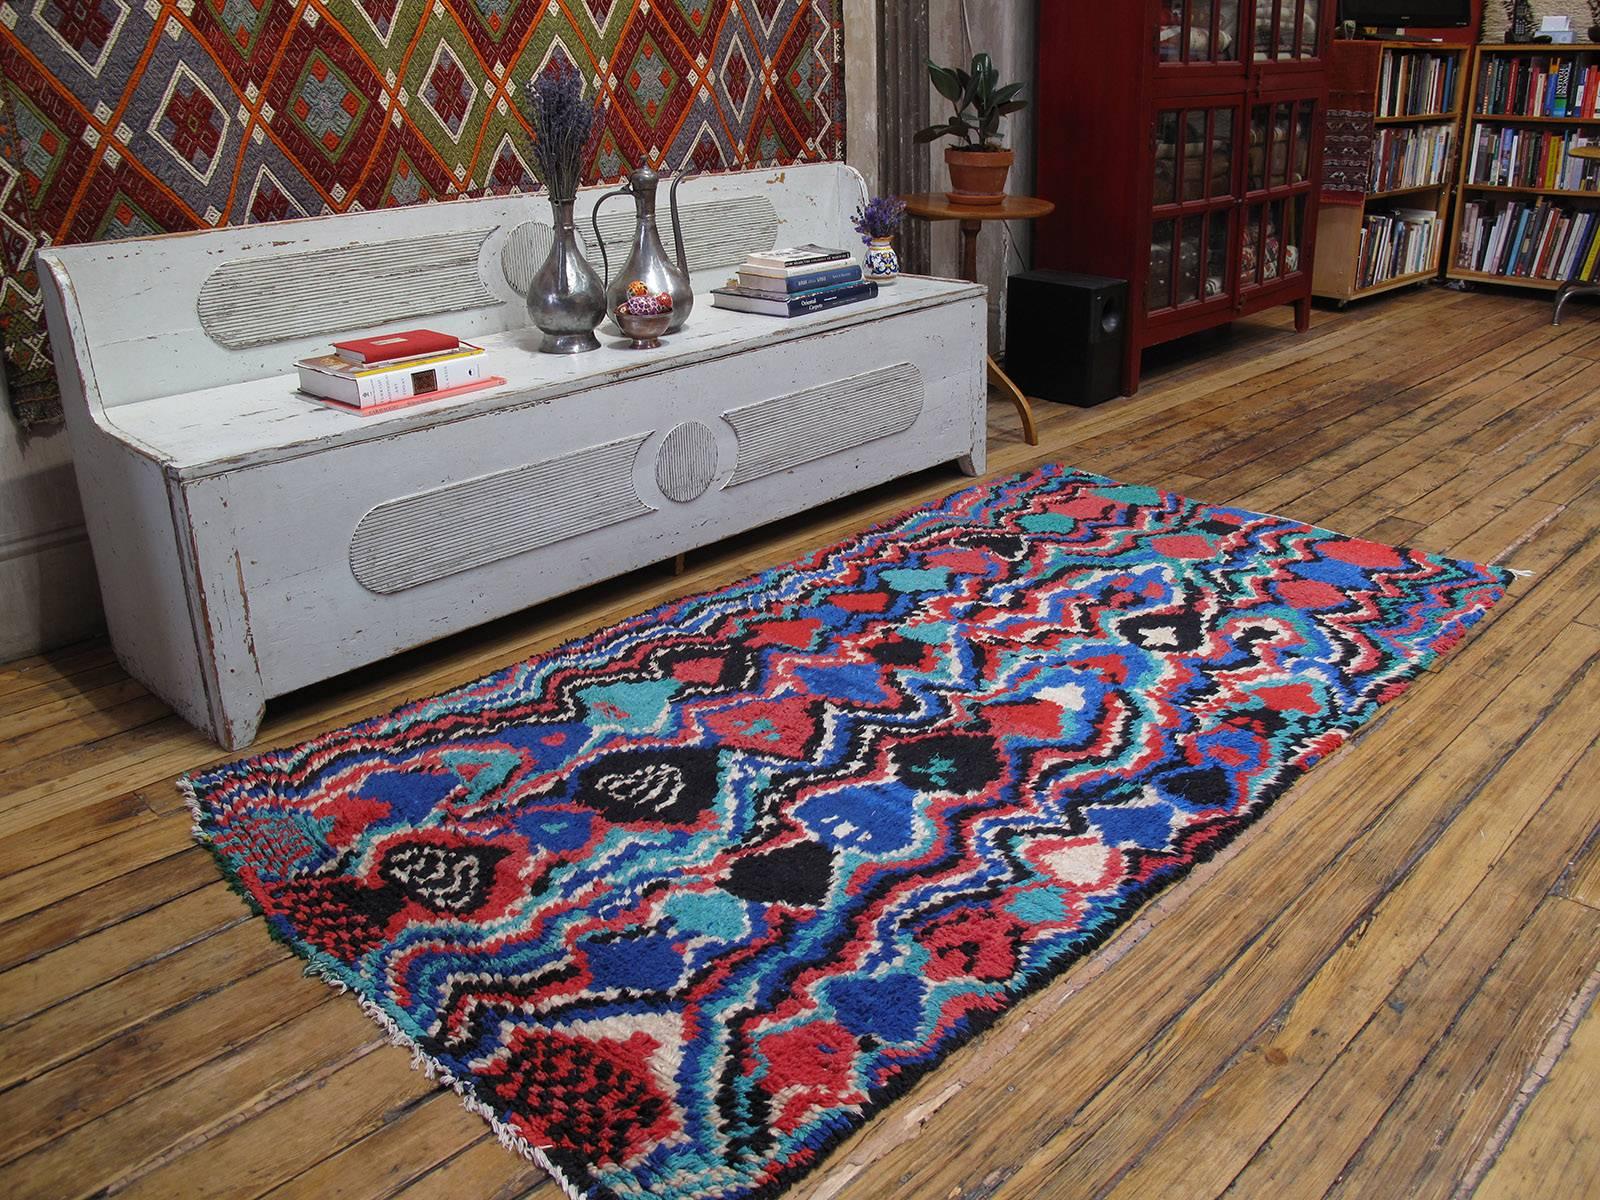 Psychedelischer marokkanischer Berberteppich Azilal. Das klassische Berber-Rautengitter ist durch die Hände einer sehr talentierten Weberin zu einer psychedelischen Vision verschmolzen. Einer unserer besten Funde in diesem Jahr. Die Teppiche aus dem